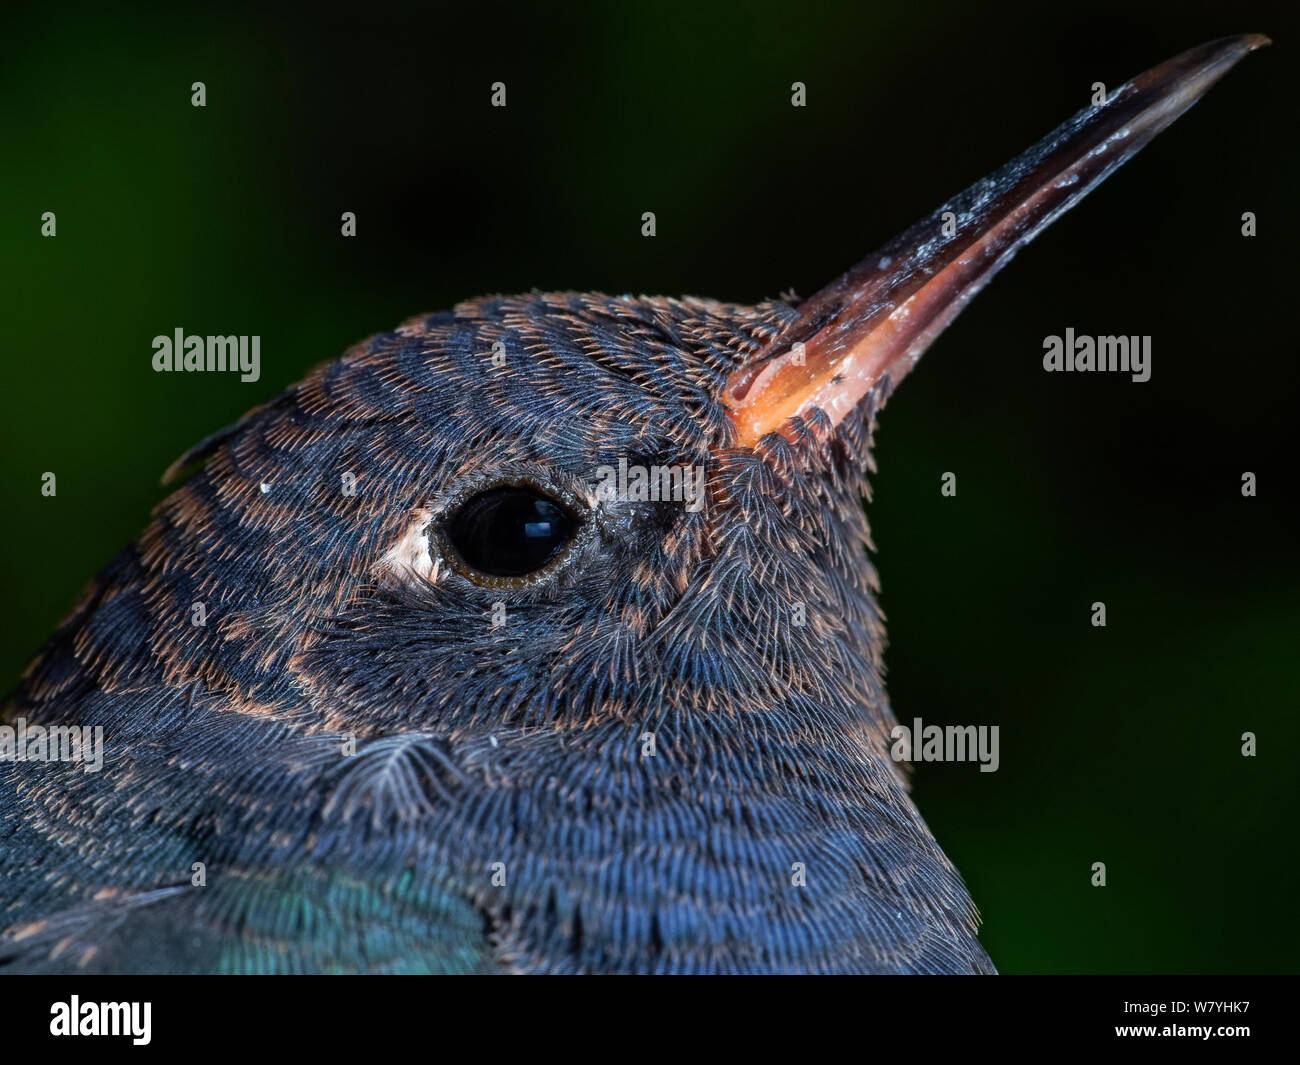 Kolibri Kopf Nahaufnahme zeigt die Federn im Detail, vogel Rettung in einem Garten Stockfoto